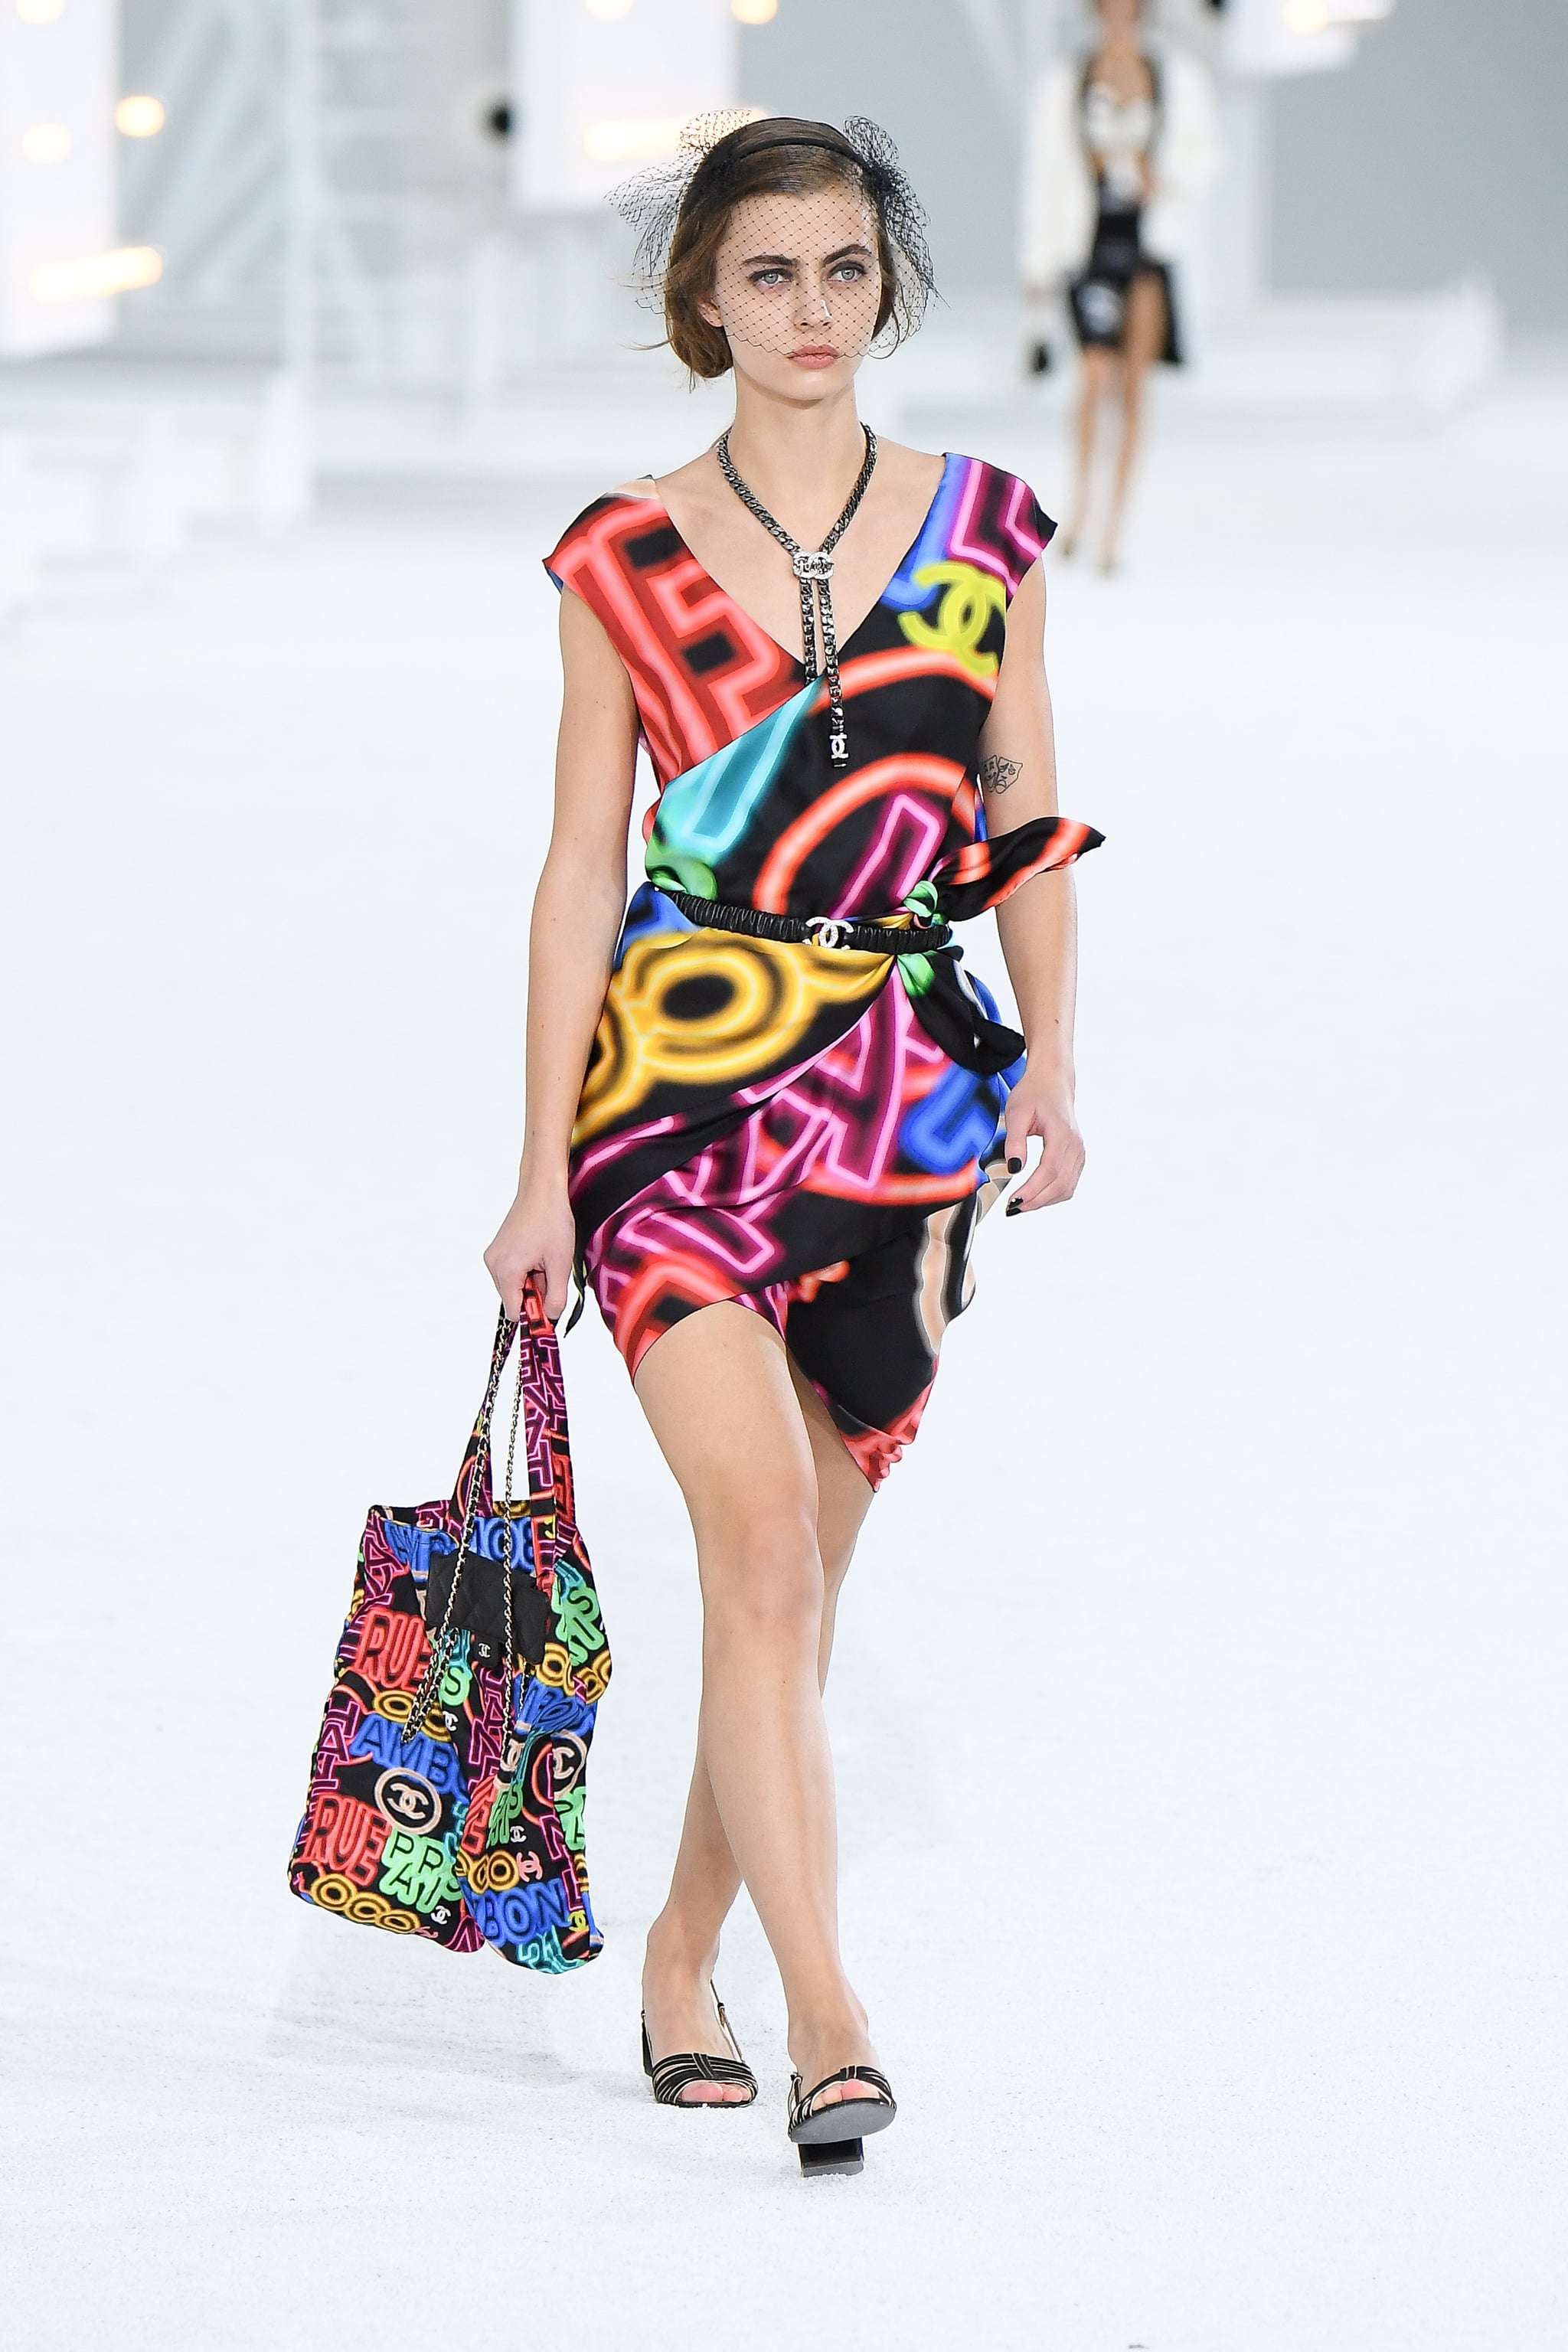 Handbags  SpringSummer 2023 precollection  Fashion  CHANEL